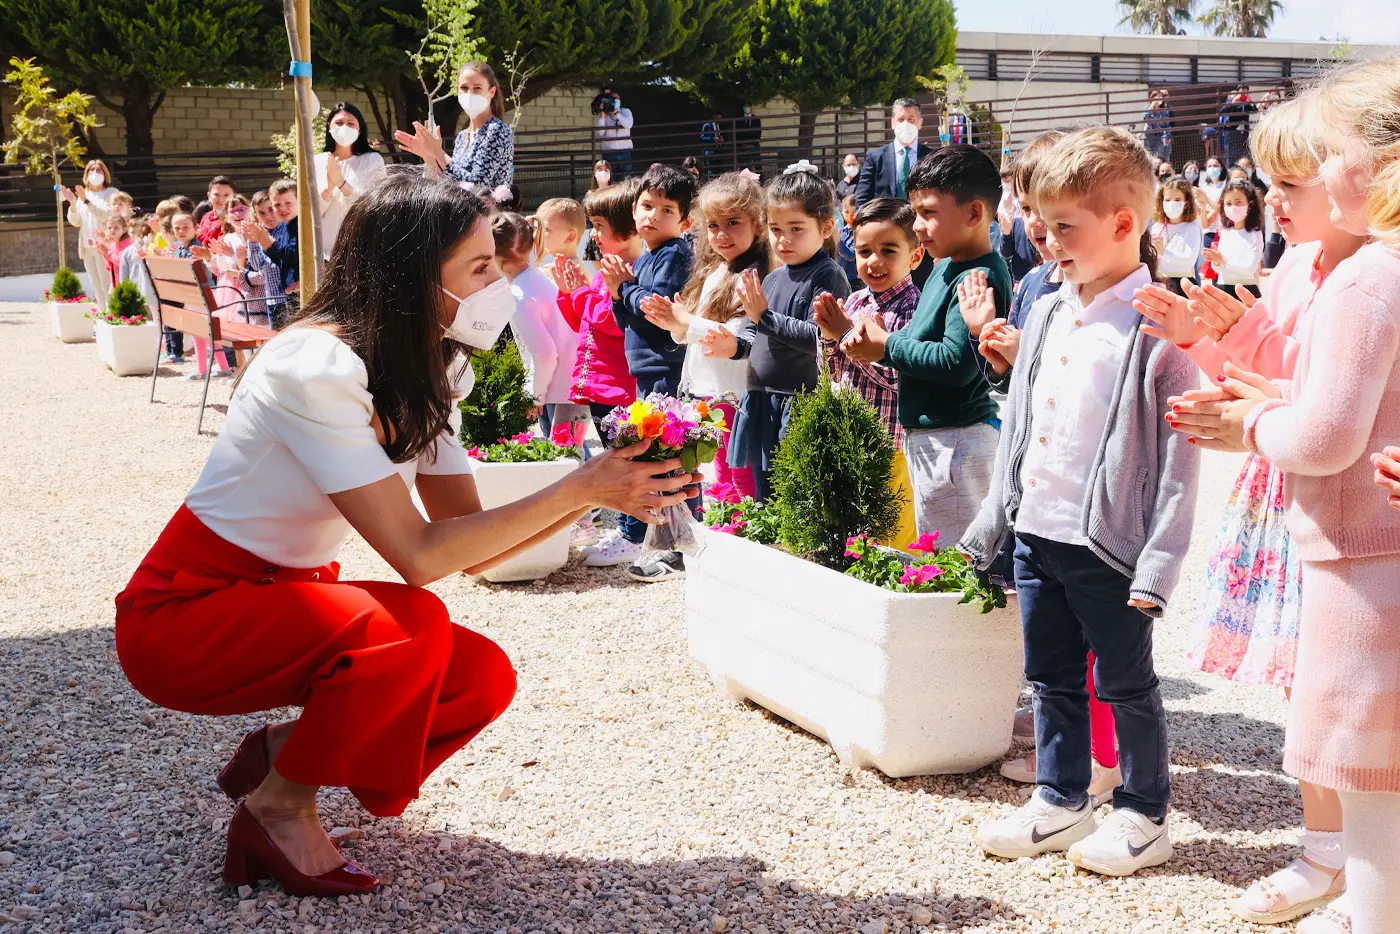 Queen Letizia toured the facilities and met with school children